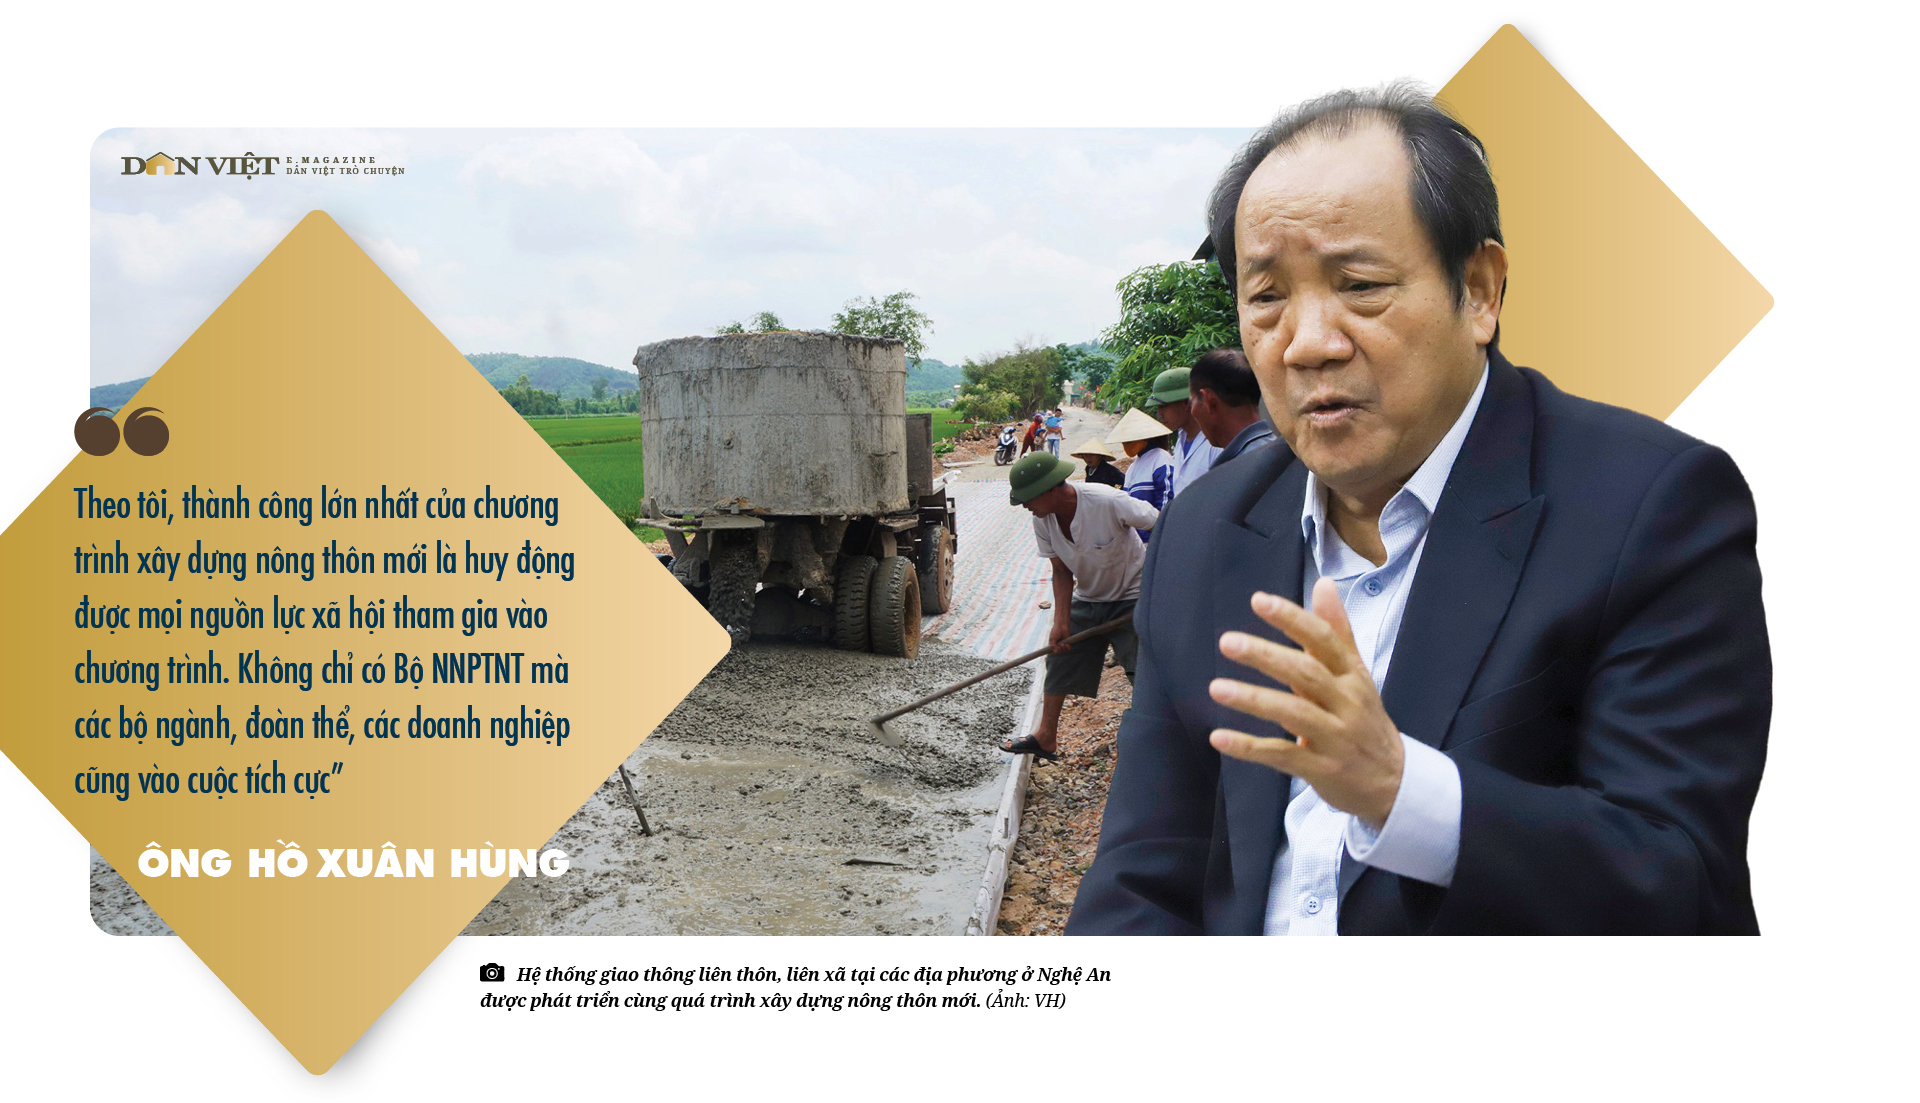 Nguyên Thứ trưởng Bộ NNPTNT, nguyên Chủ tịch UBND tỉnh Nghệ An Hồ Xuân Hùng: &quot;Một đời nặng nợ với dân với mình&quot; - Ảnh 11.